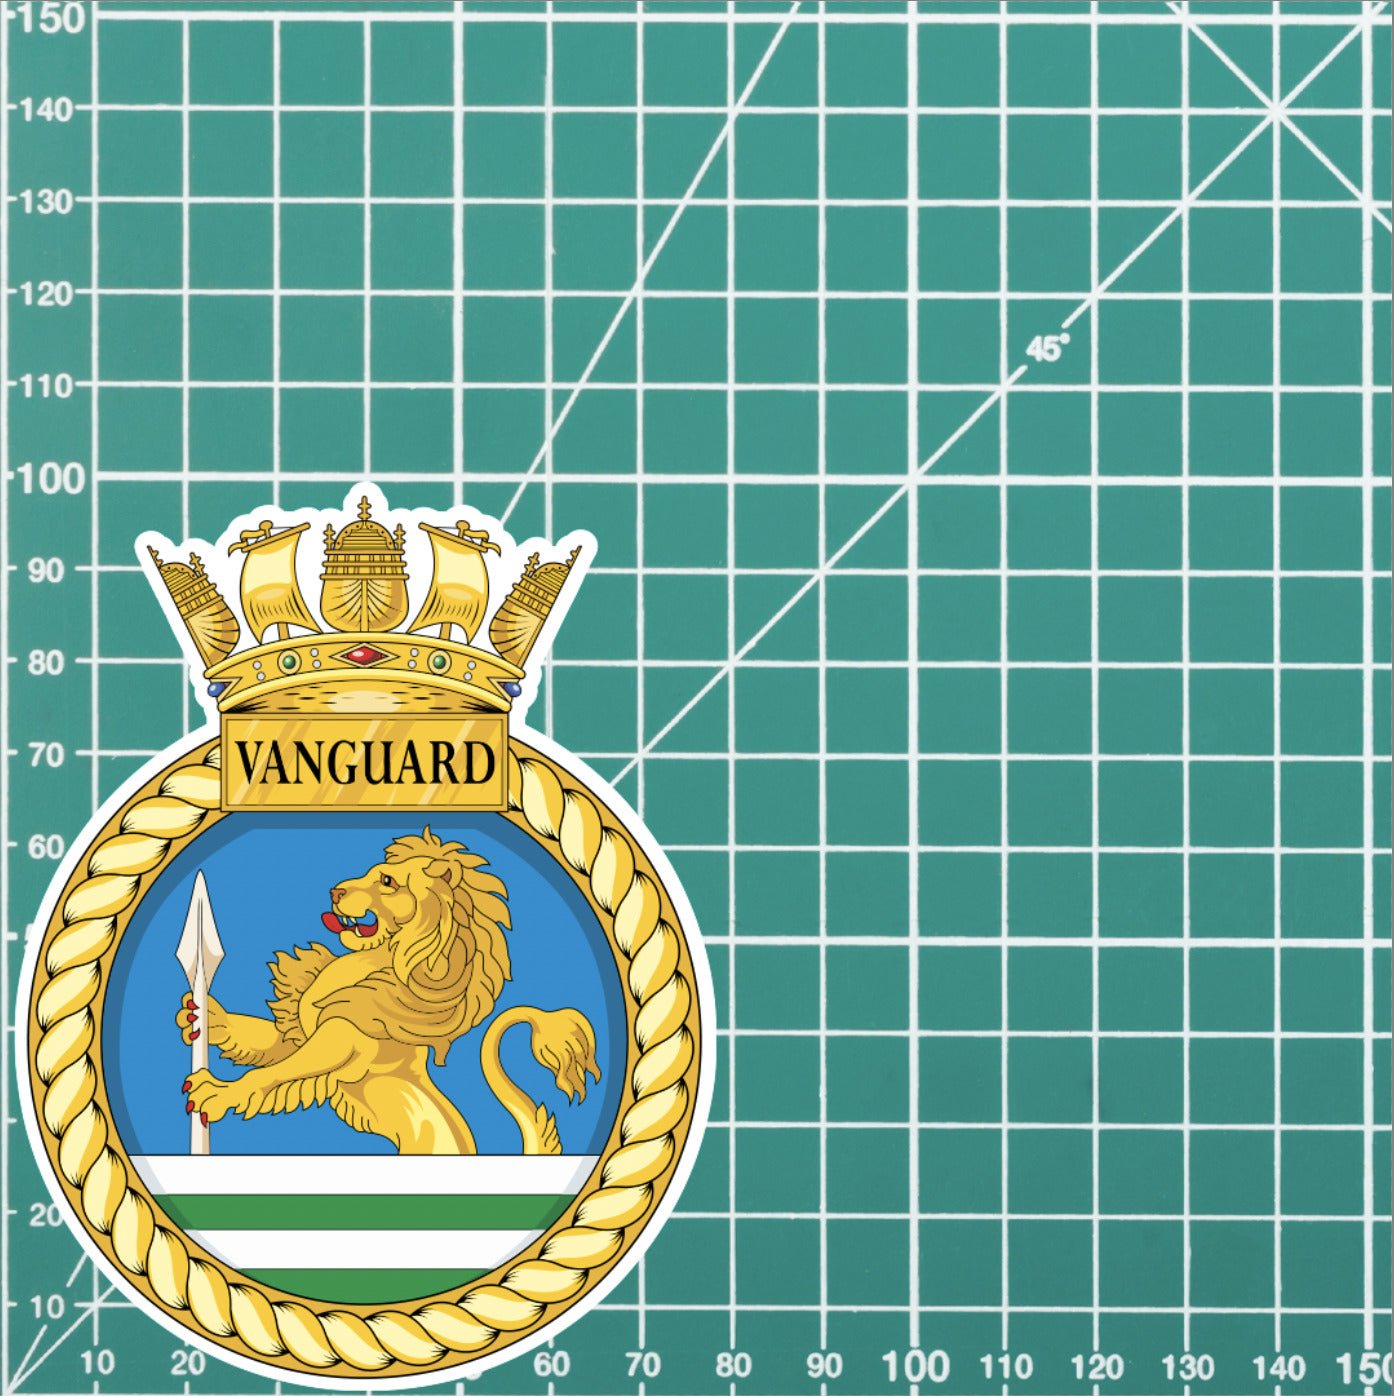 Royal Navy HMS Vanguard Waterproof Vinyl Sticker - Multiple Sizes redplume